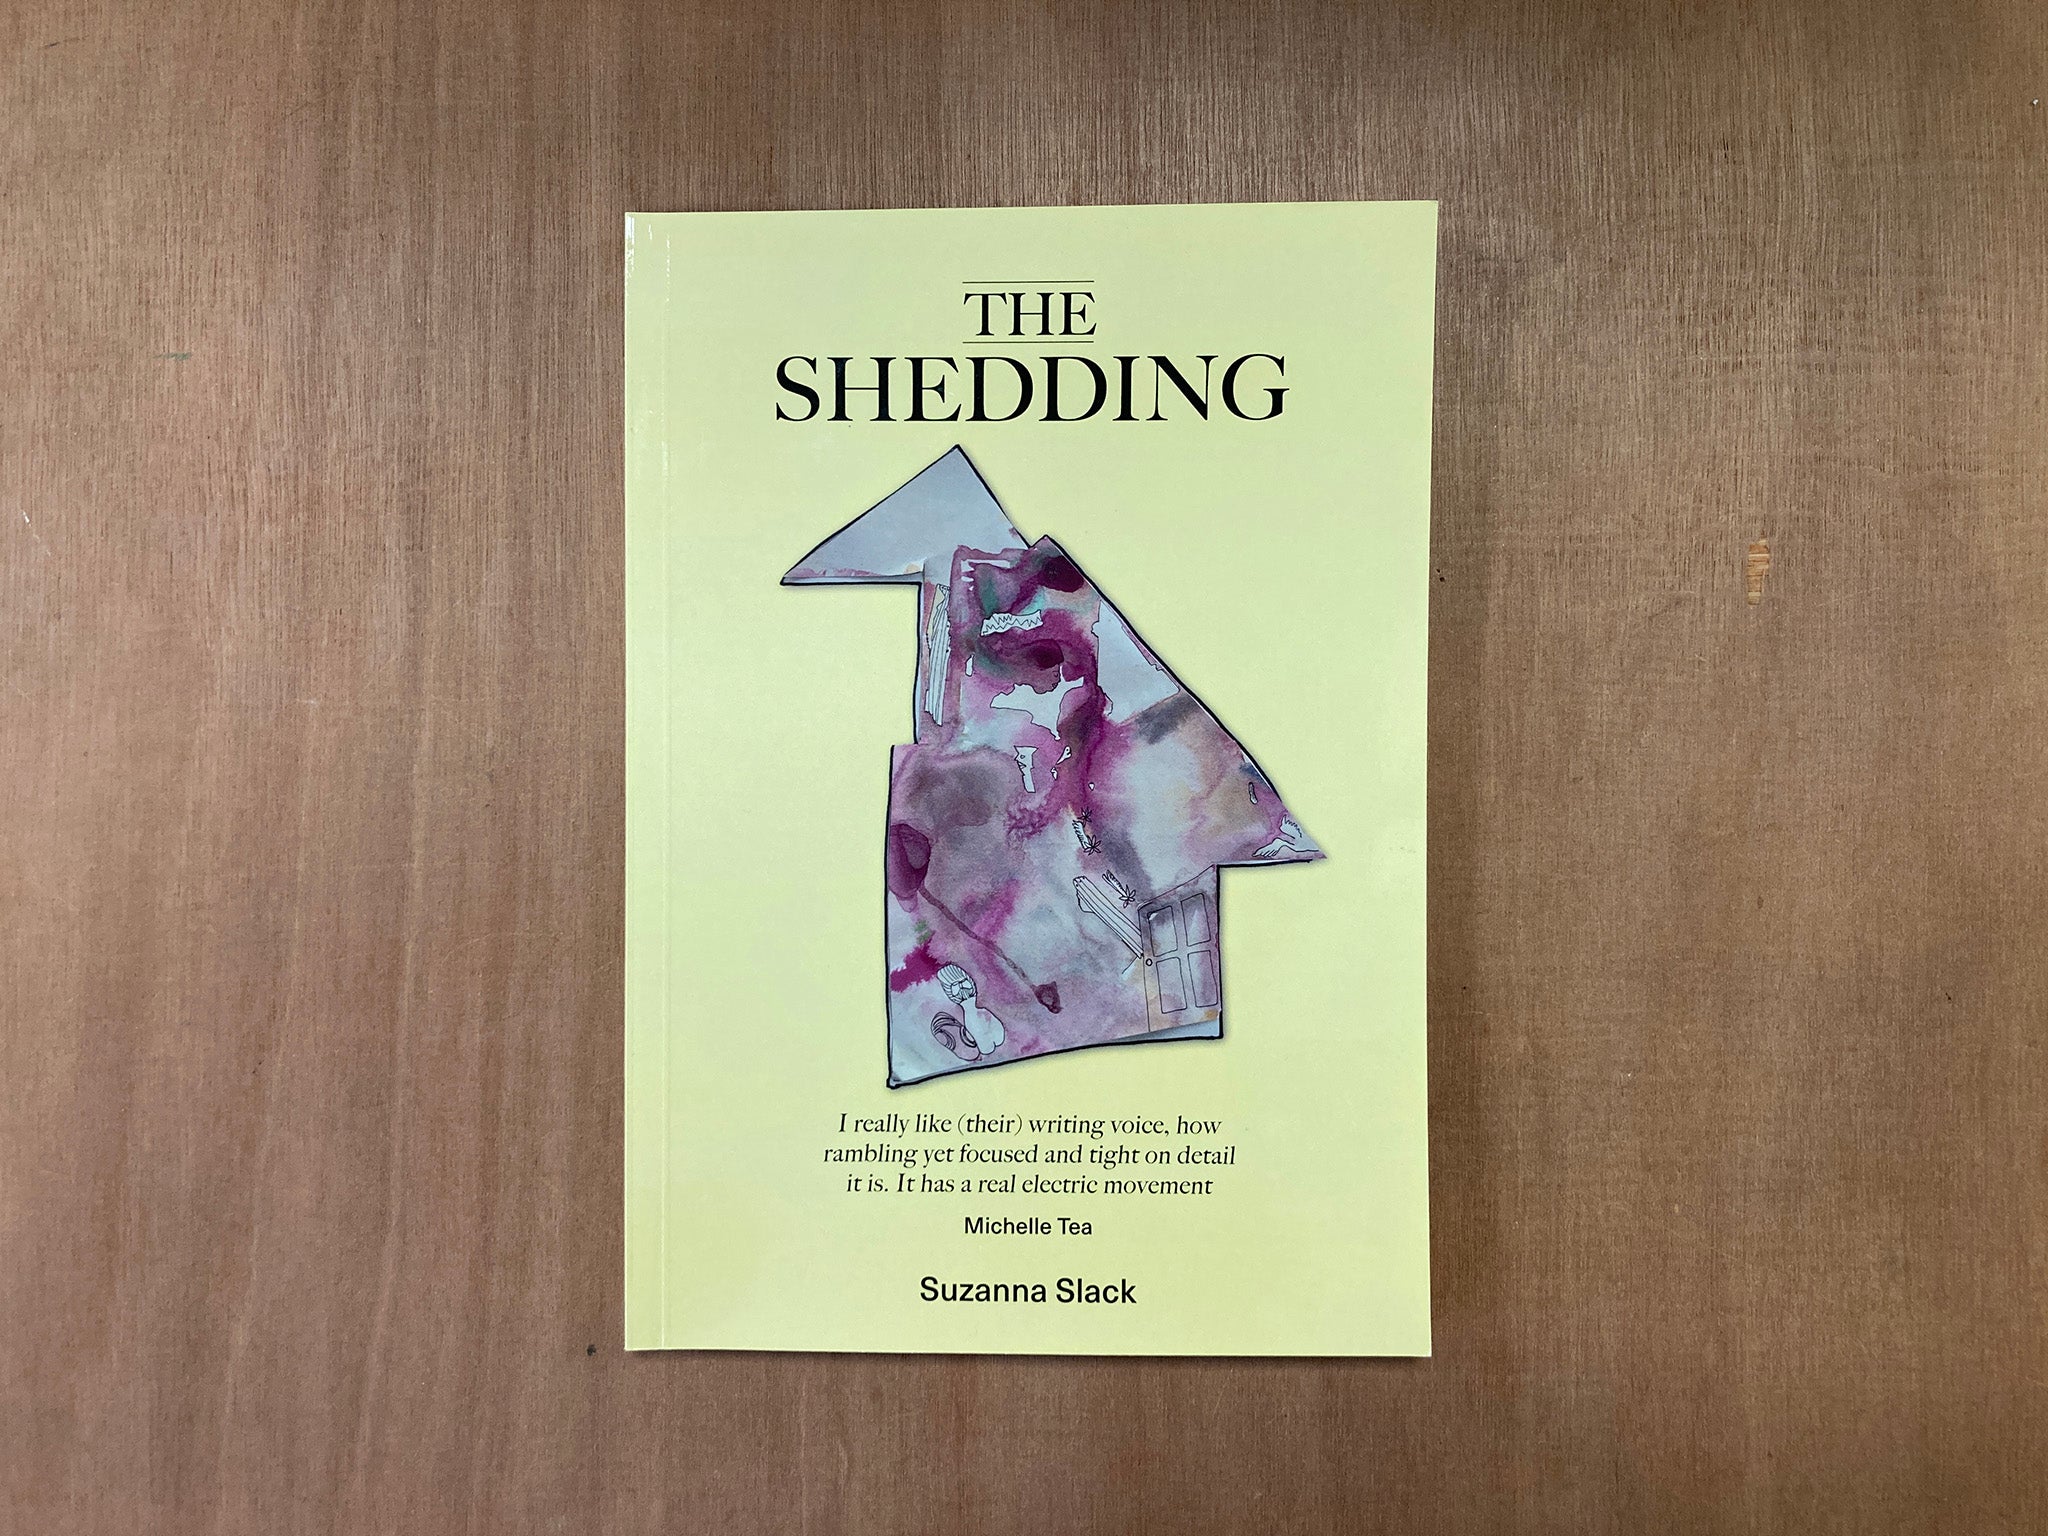 THE SHEDDING by Suzanna Slack